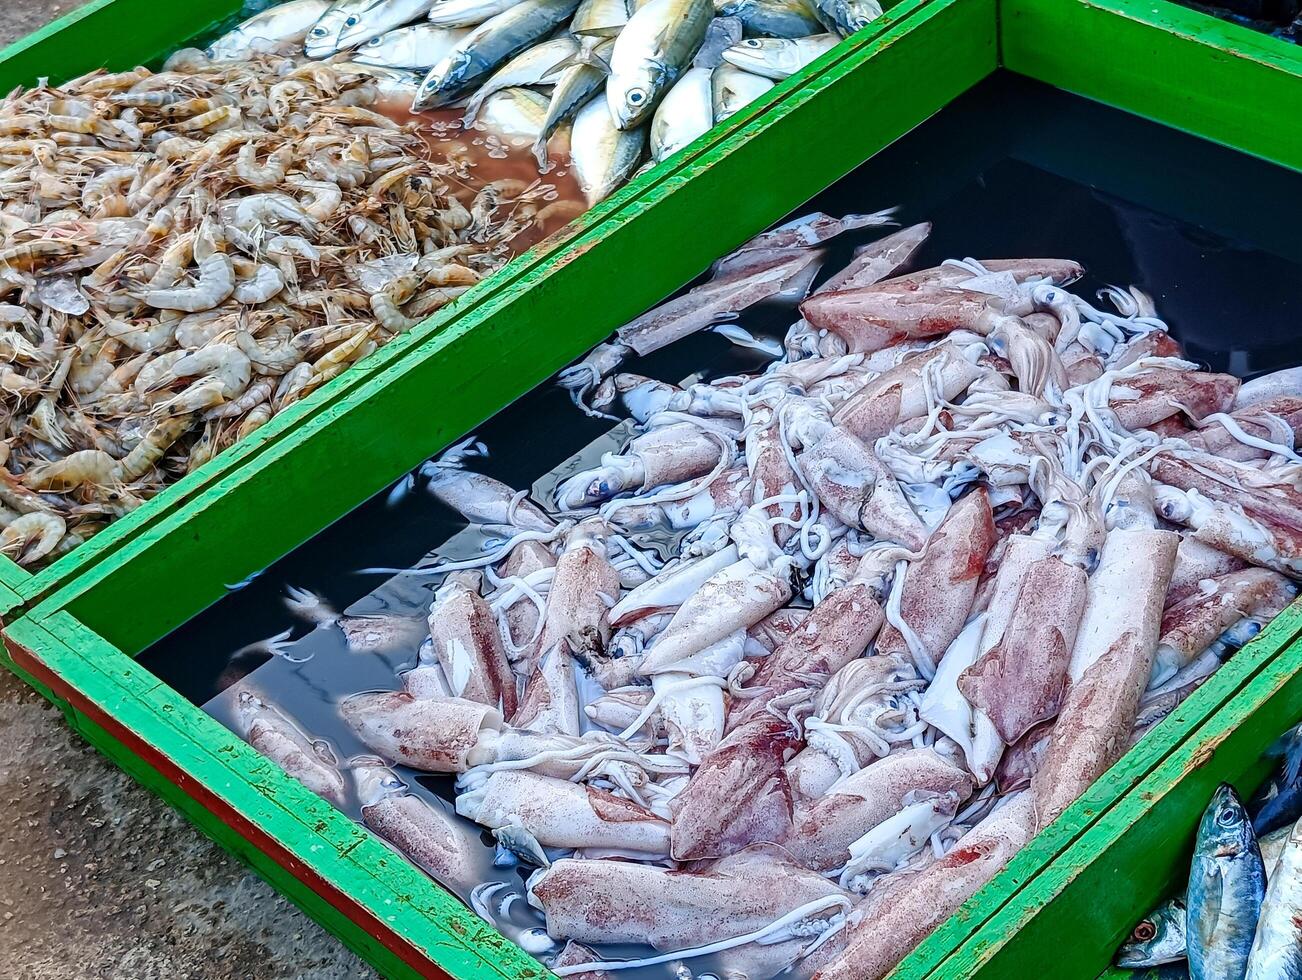 ventas de pindang pez, calamar y camarón foto